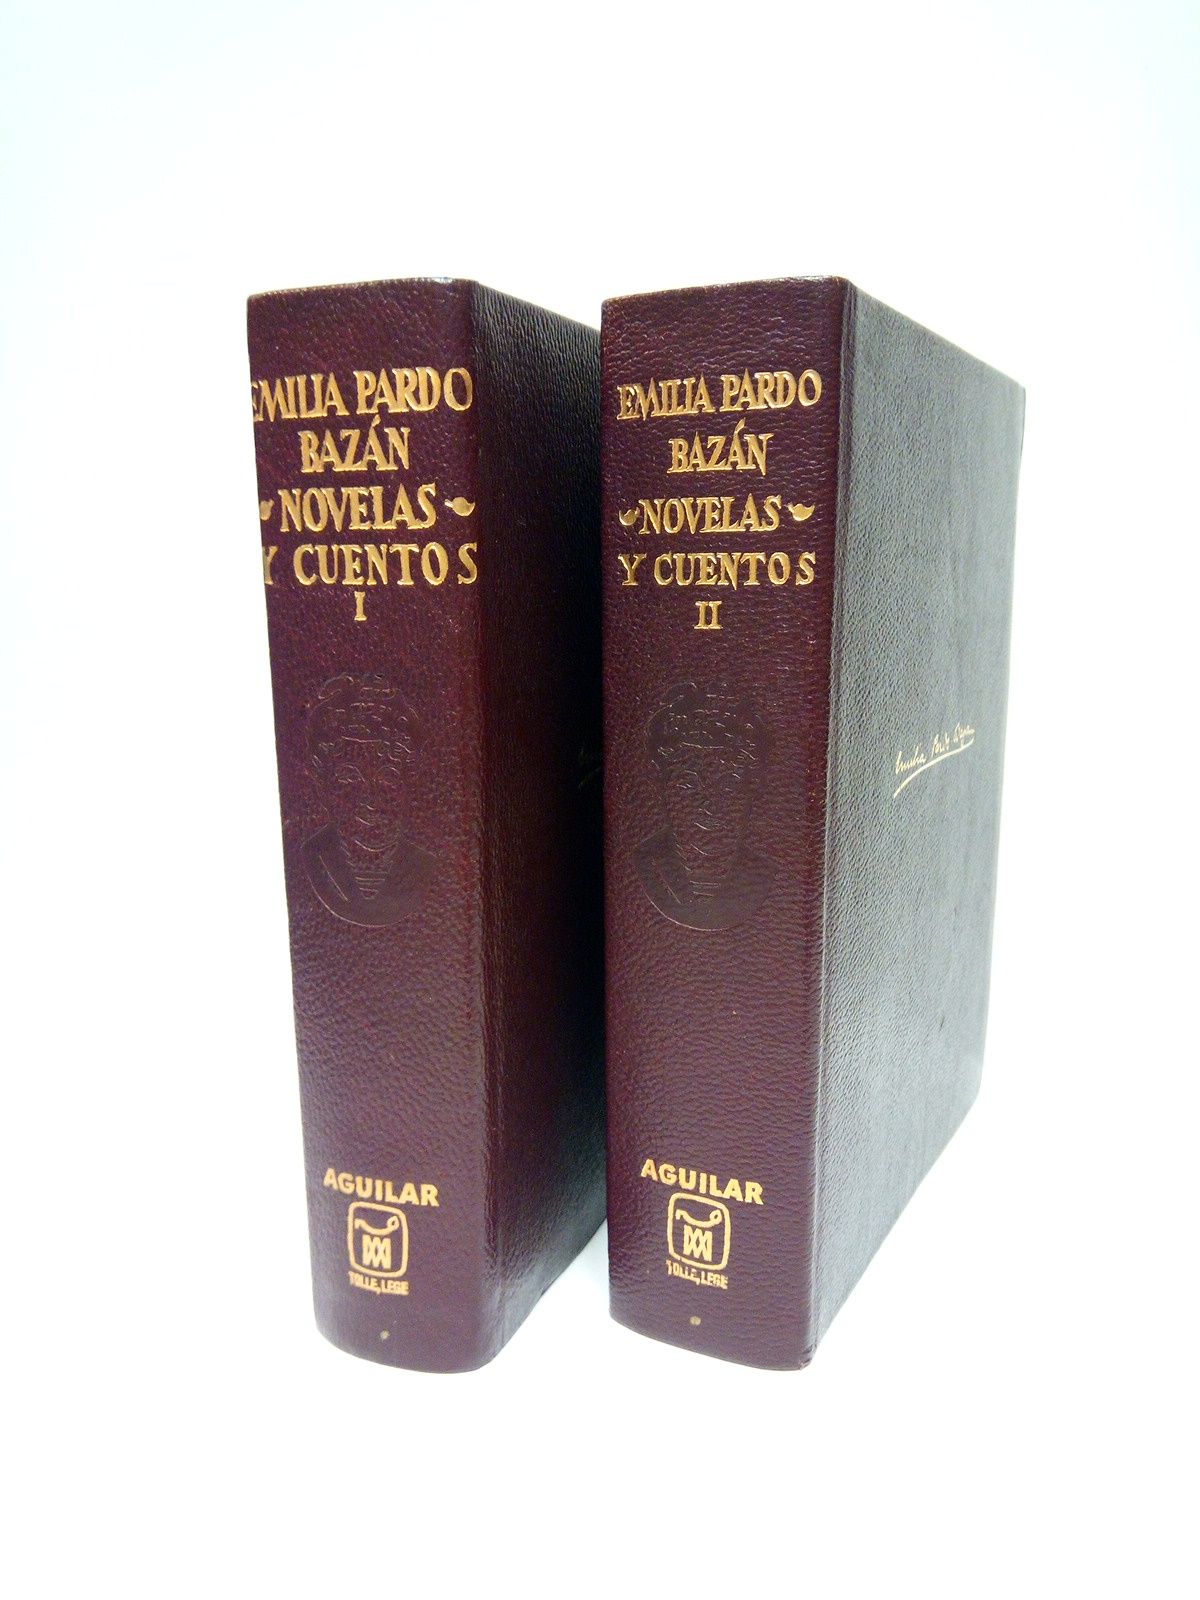 PARDO BAZN, Emilia - Obras Completas (Novelas y cuentos) / Estudio preliminar, notas y prlogo de Federico Carlos Sainz de Robles. [2 VOLS.]